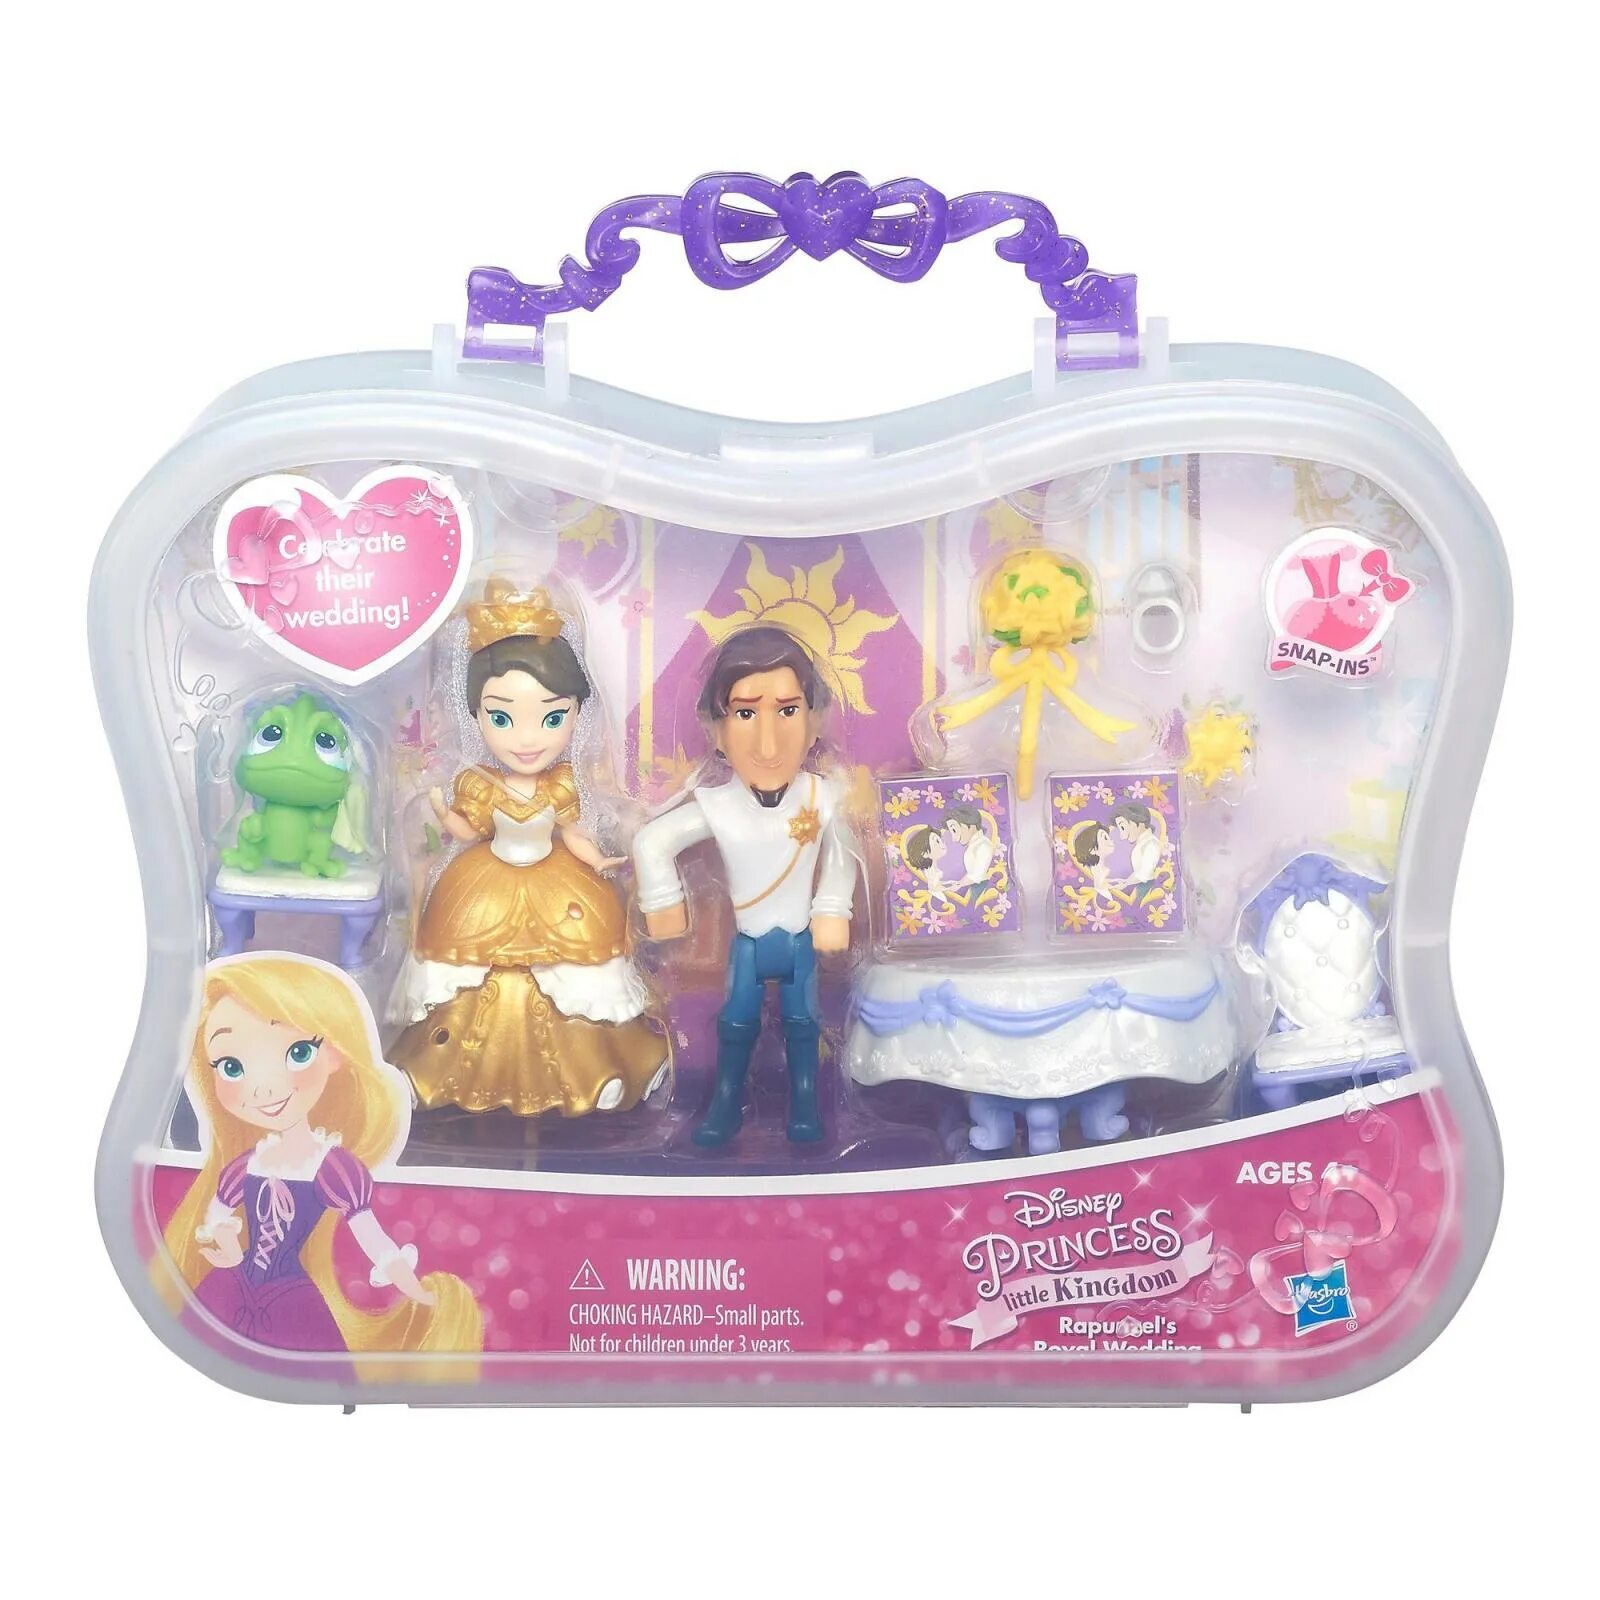 Набор Hasbro Disney Princess маленькое королевство, 8 см, b5341. Мини куклы Хасбро принцессы Дисней Рапунцель. Набор мини-кукол Hasbro Disney Princess Королевское сияние, b5347. Игровой набор Hasbro Disney Princess Рапунцель.